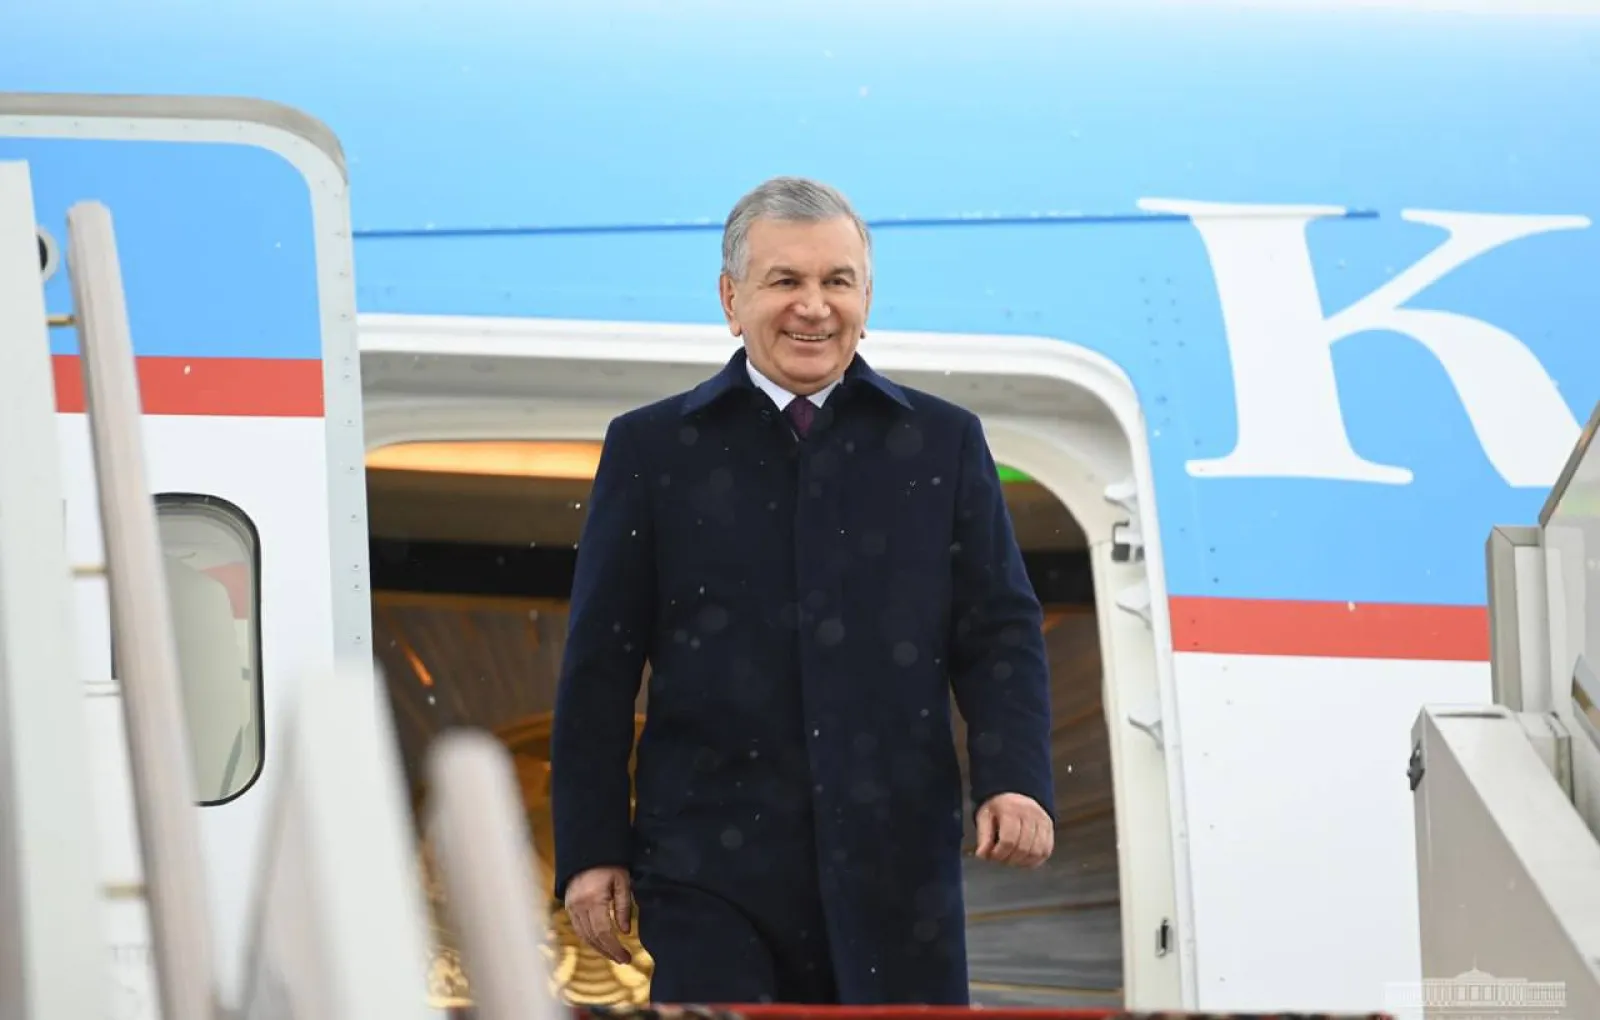 Шавкат Мирзиёев: Узбекистан заинтересован в расширении партнерства с ЕАЭС